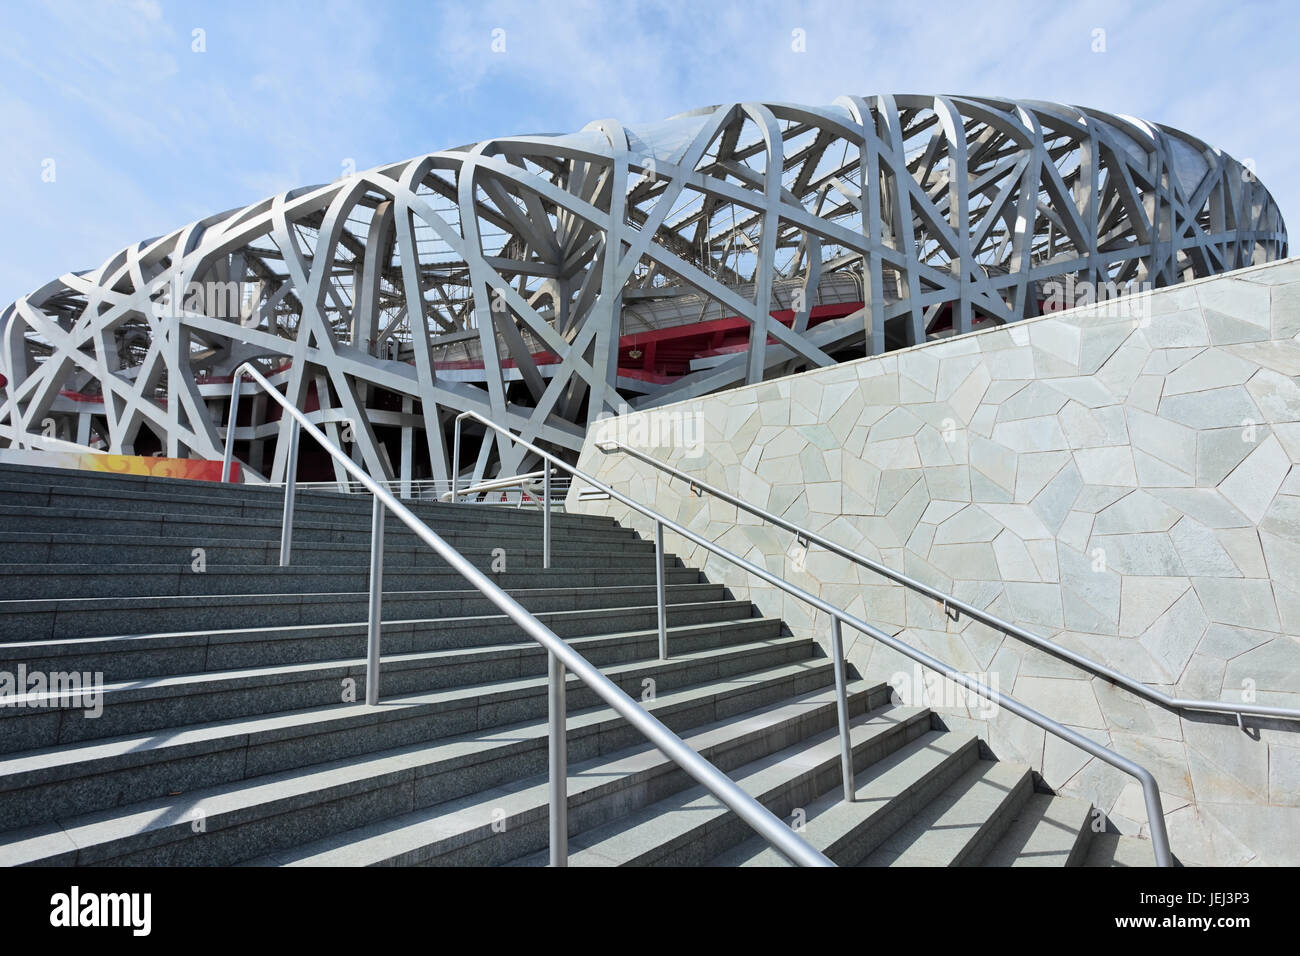 PECHINO - SETTEMBRE 17. Nido d'uccello di giorno. Il Bird's Nest è uno stadio di Pechino, Cina. È stato progettato per le Olimpiadi estive del 2008. Foto Stock